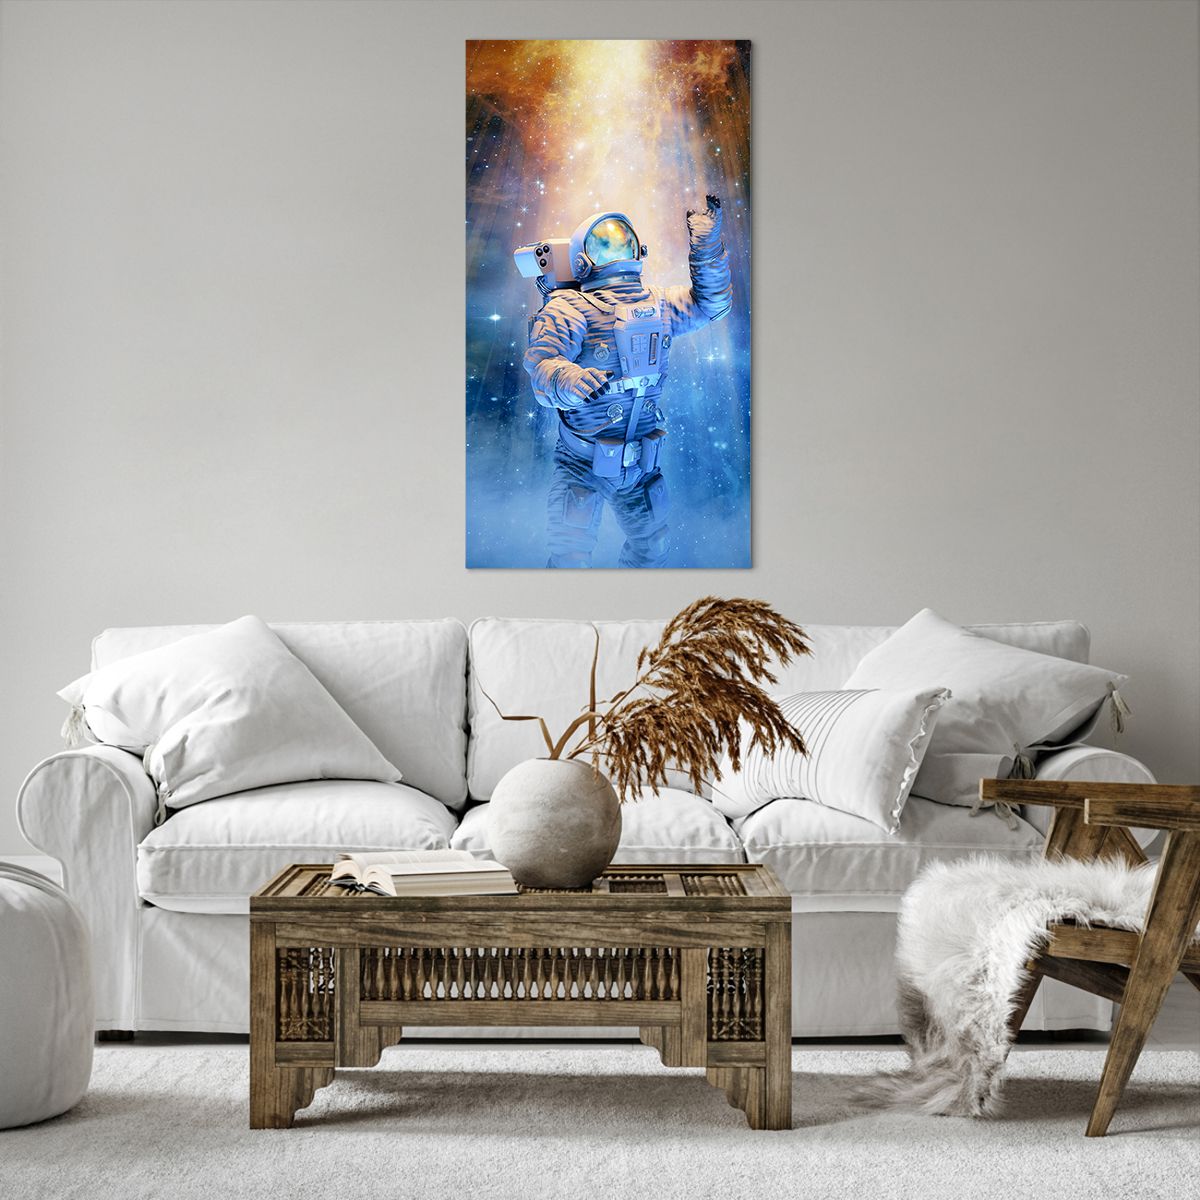 Bild auf Leinwand Abstraktion, Bild auf Leinwand Astronaut, Bild auf Leinwand Kosmos, Bild auf Leinwand Kunst, Bild auf Leinwand Universum